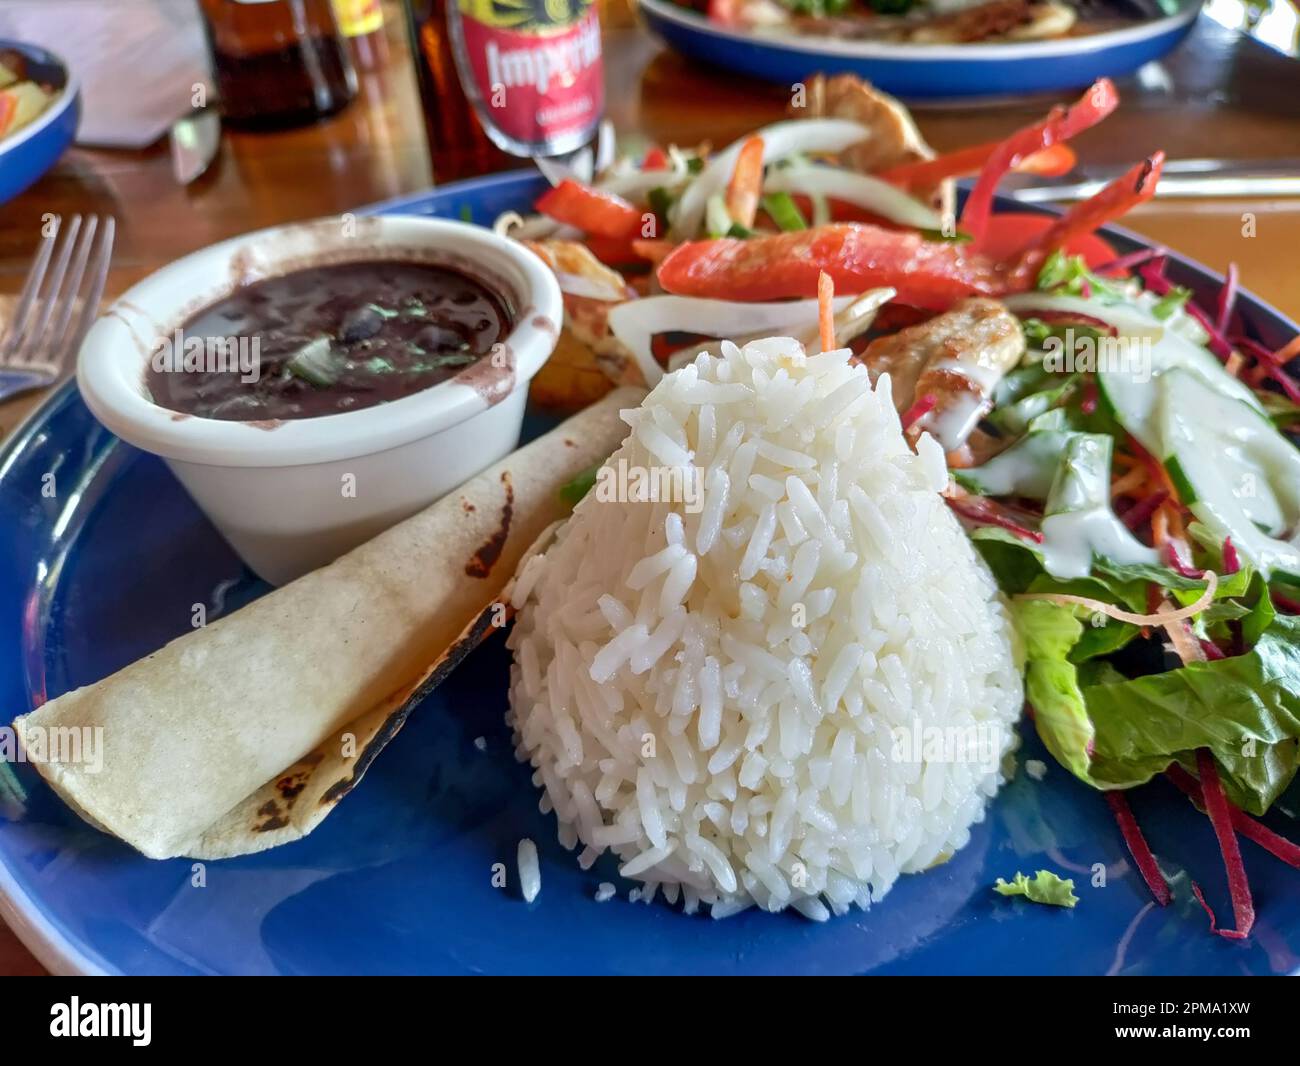 La Fortuna, Costa Rica - Casado, ein traditionelles Mittagessen in Costa Rica. Es umfasst normalerweise Reis, Bohnen, Fleisch, Mehlbananen, Salat, Und eine Tortilla. Stockfoto